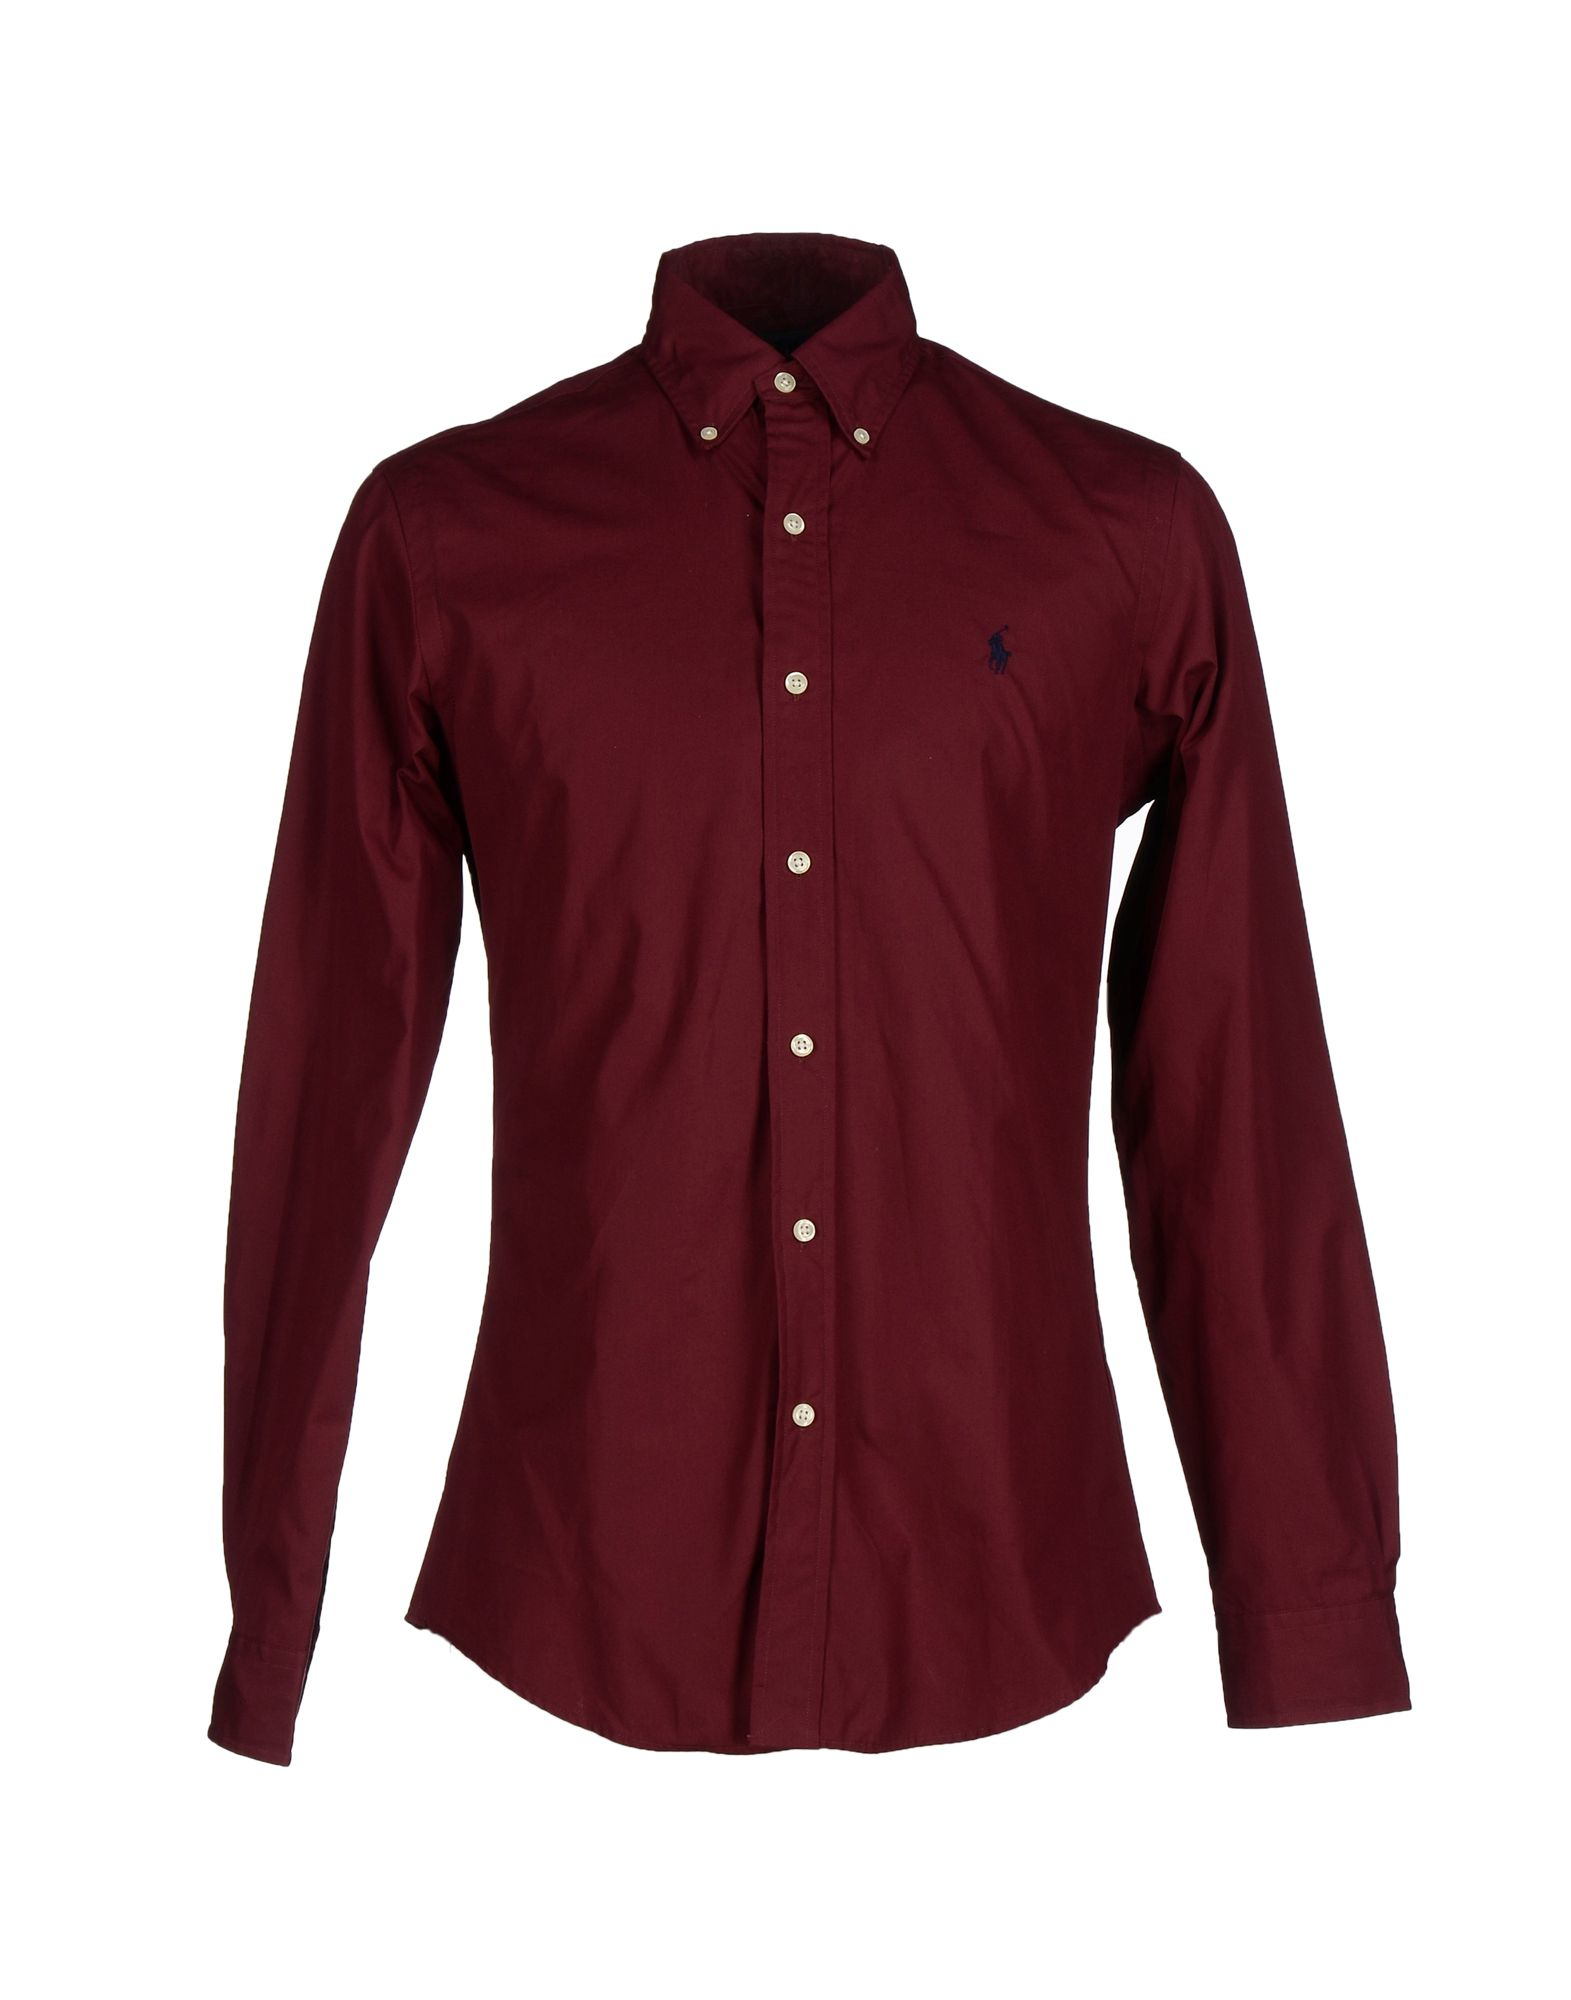 maroon ralph lauren shirt